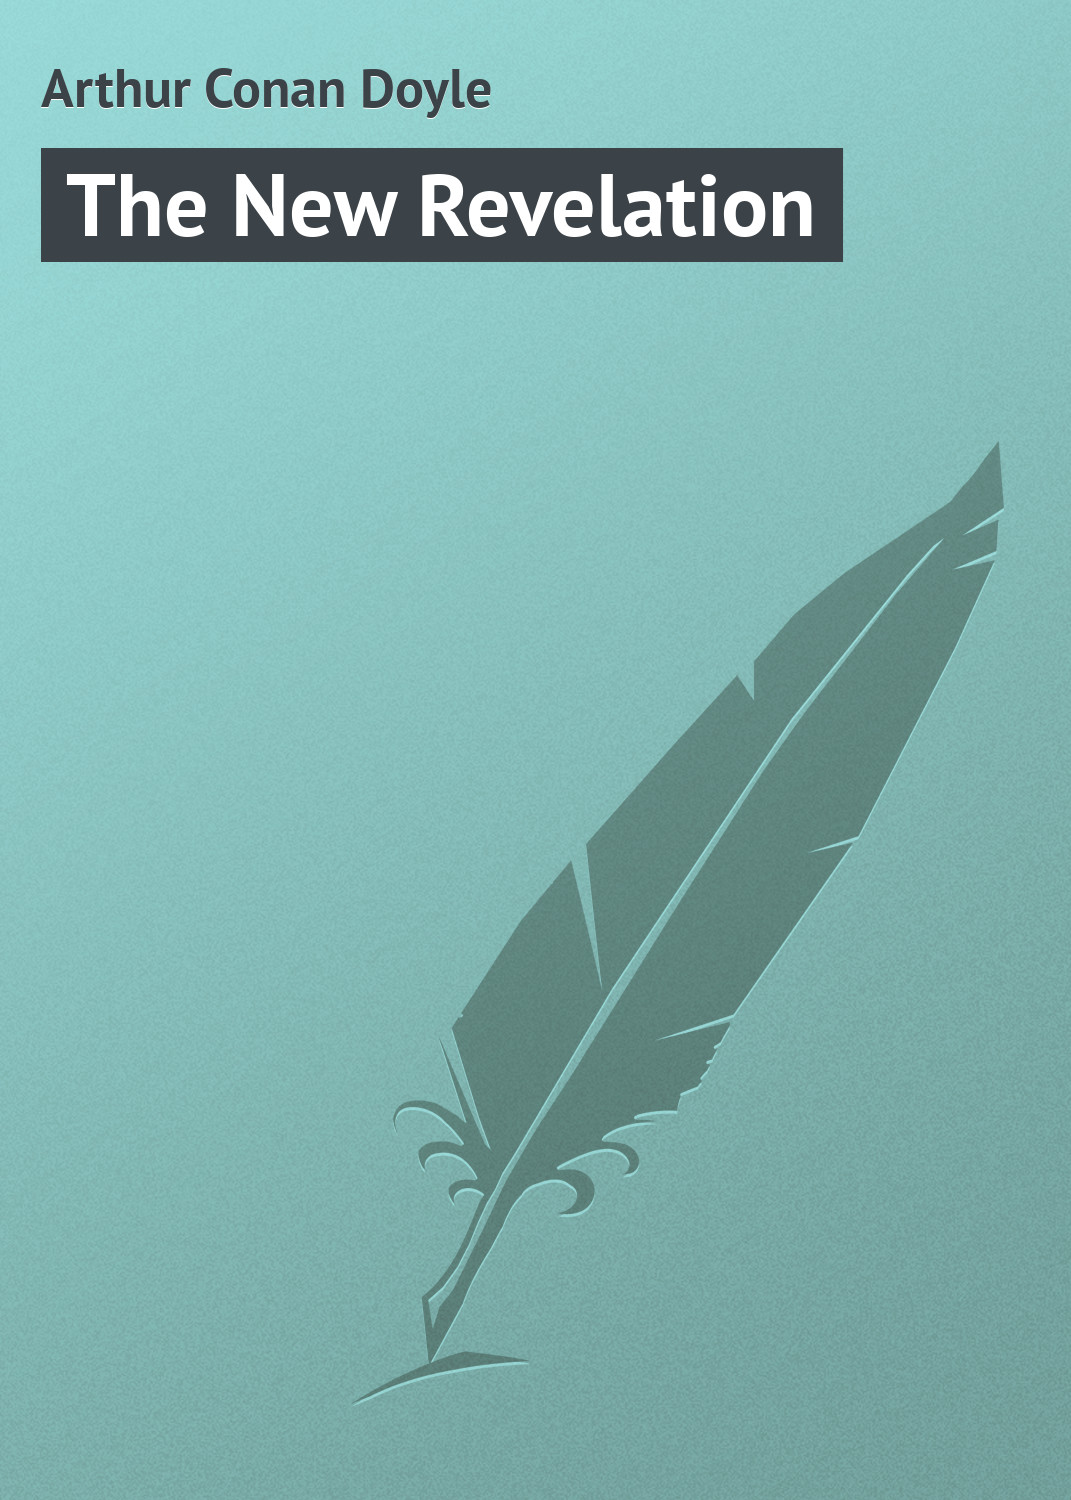 Книга The New Revelation из серии , созданная  Arthur Conan Doyle, может относится к жанру Зарубежная публицистика, Зарубежная классика. Стоимость электронной книги The New Revelation с идентификатором 8588257 составляет 29.95 руб.